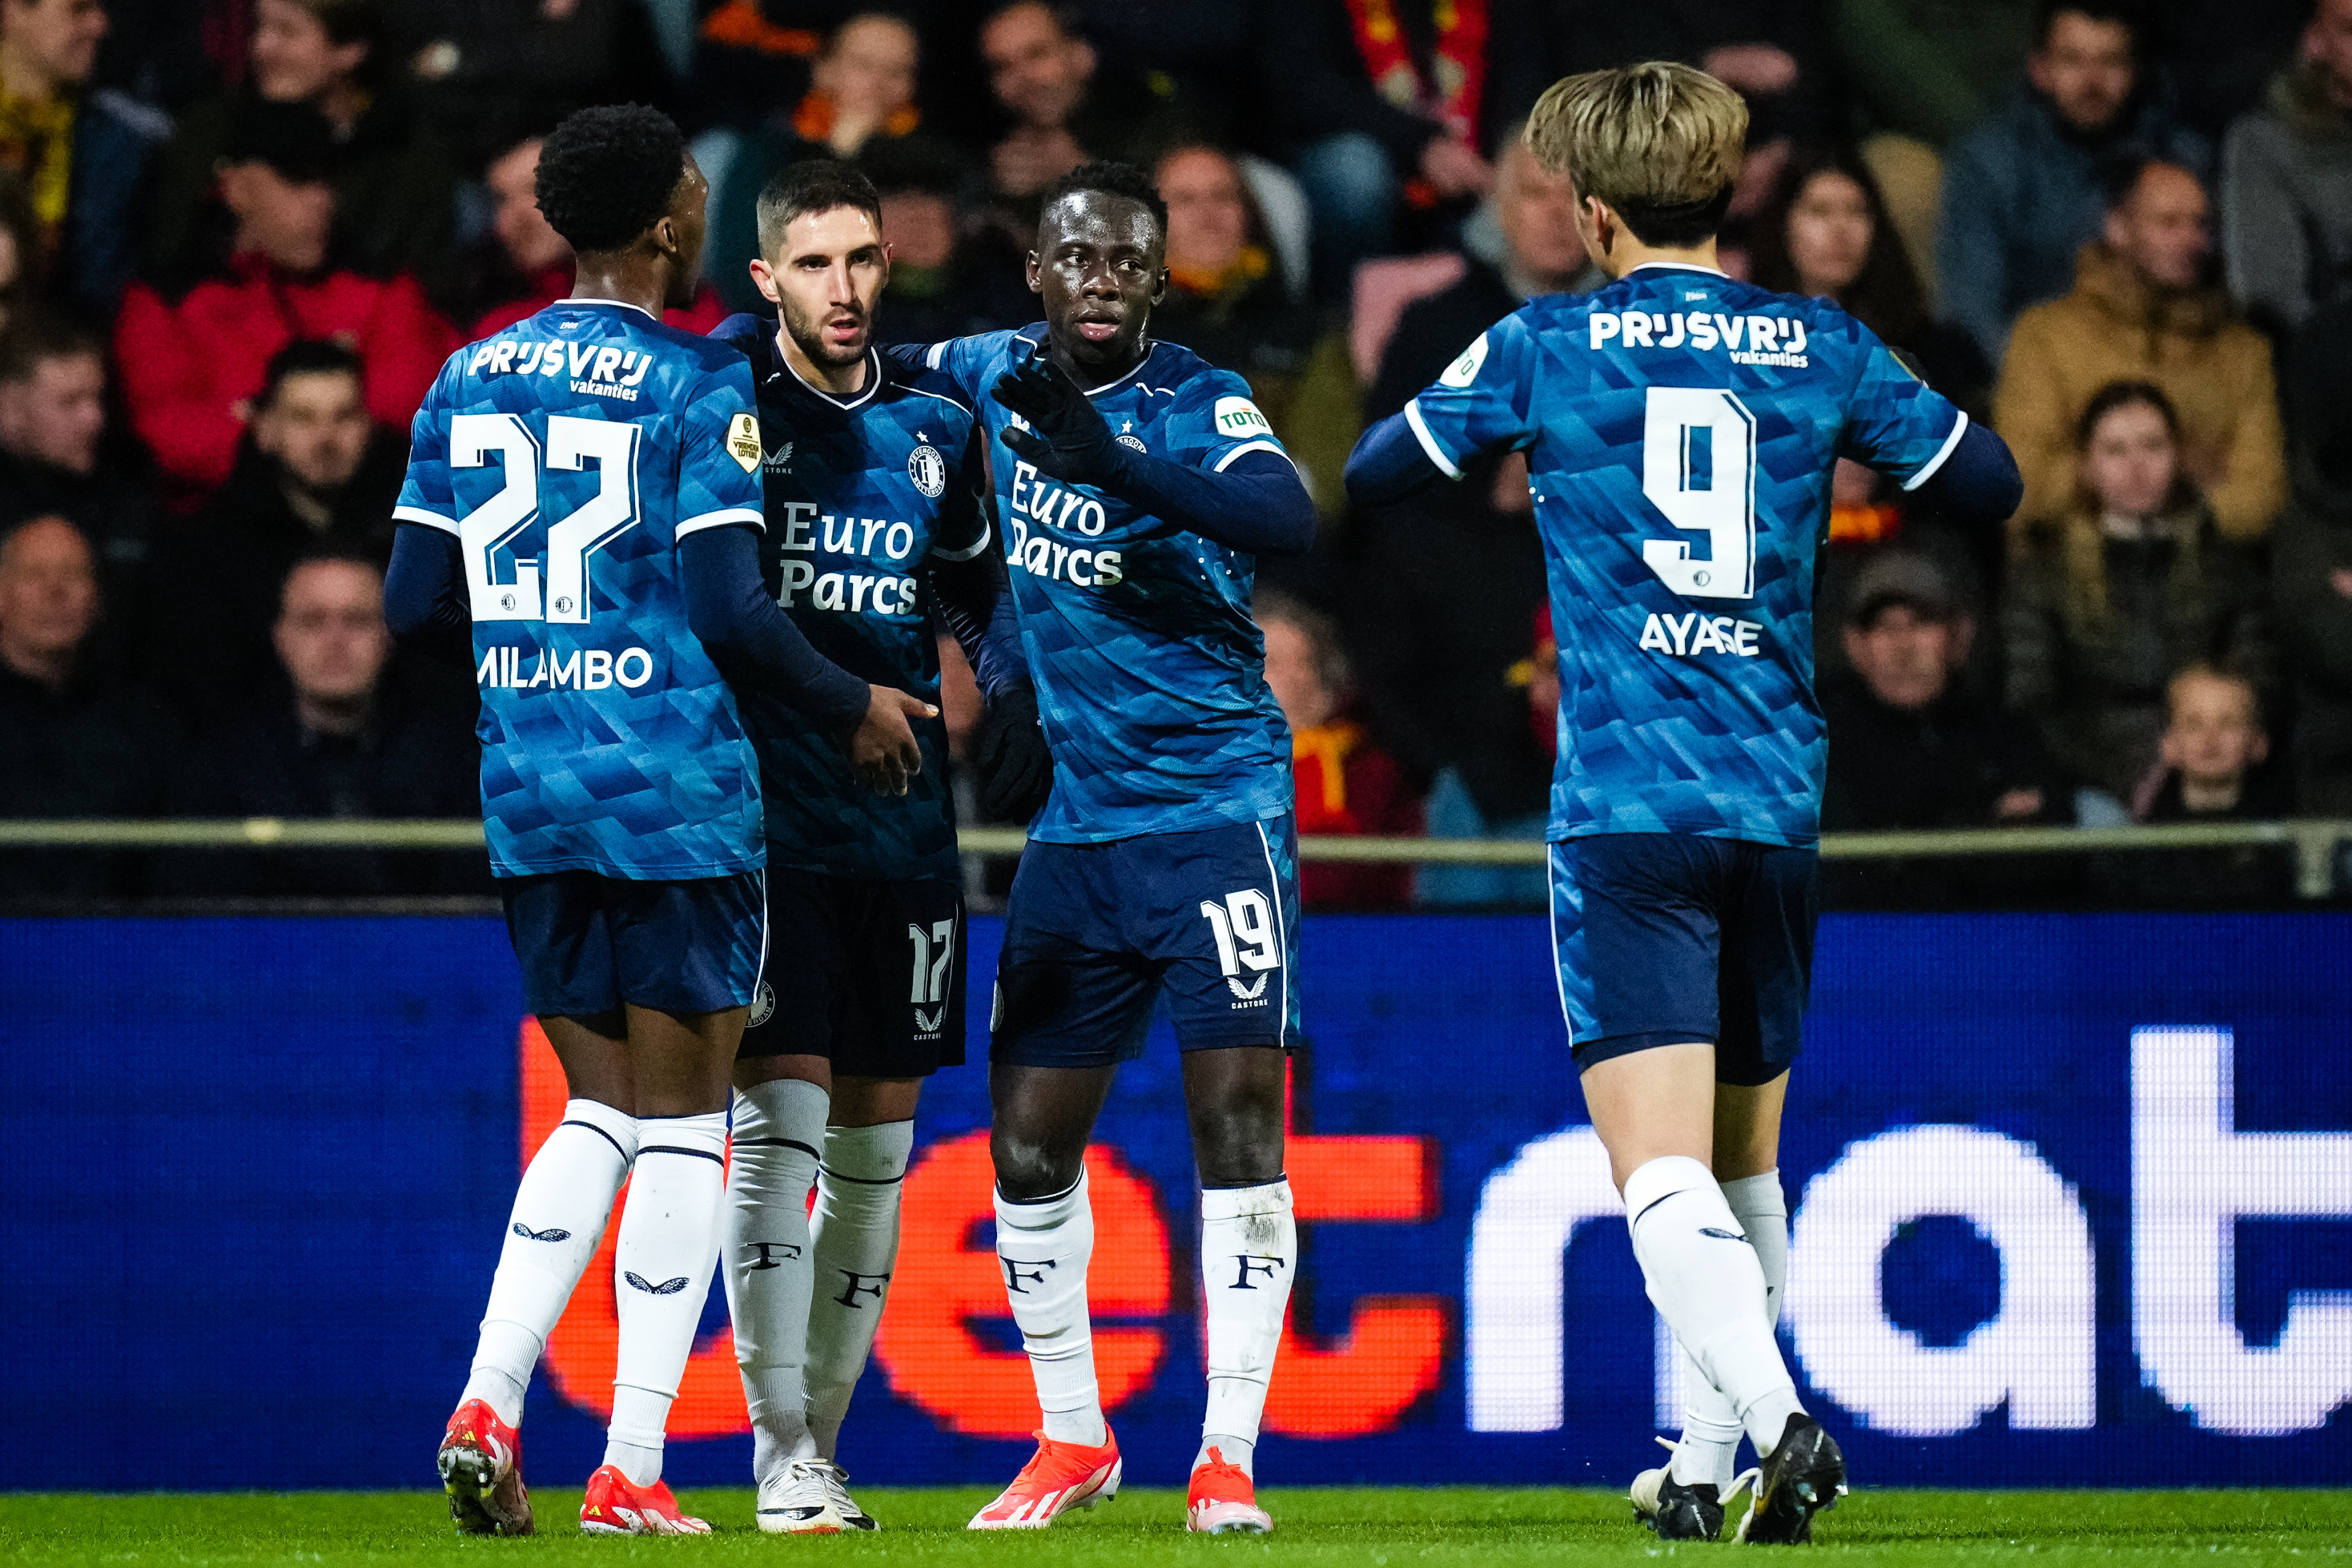 Cijfers • Ivanušec gidst Feyenoord naar overwinning